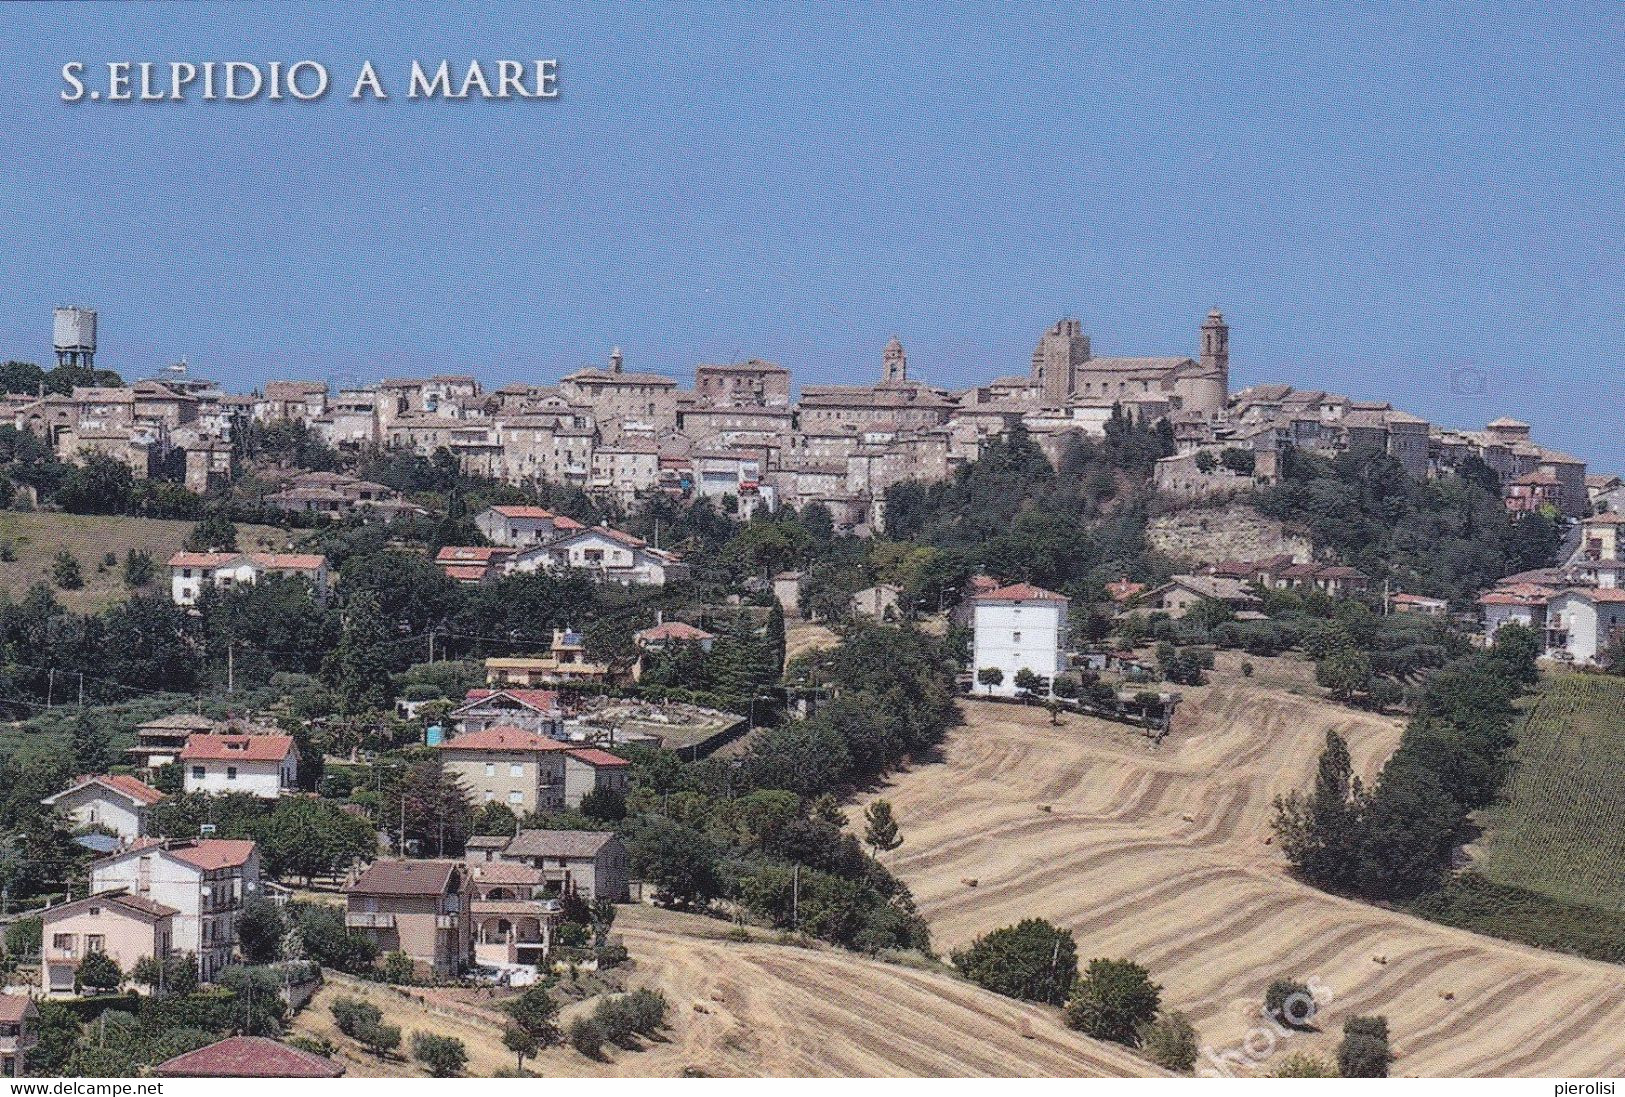 (QU192) - SANT'ELPIDIO A MARE (Fermo) - Panorama - Fermo